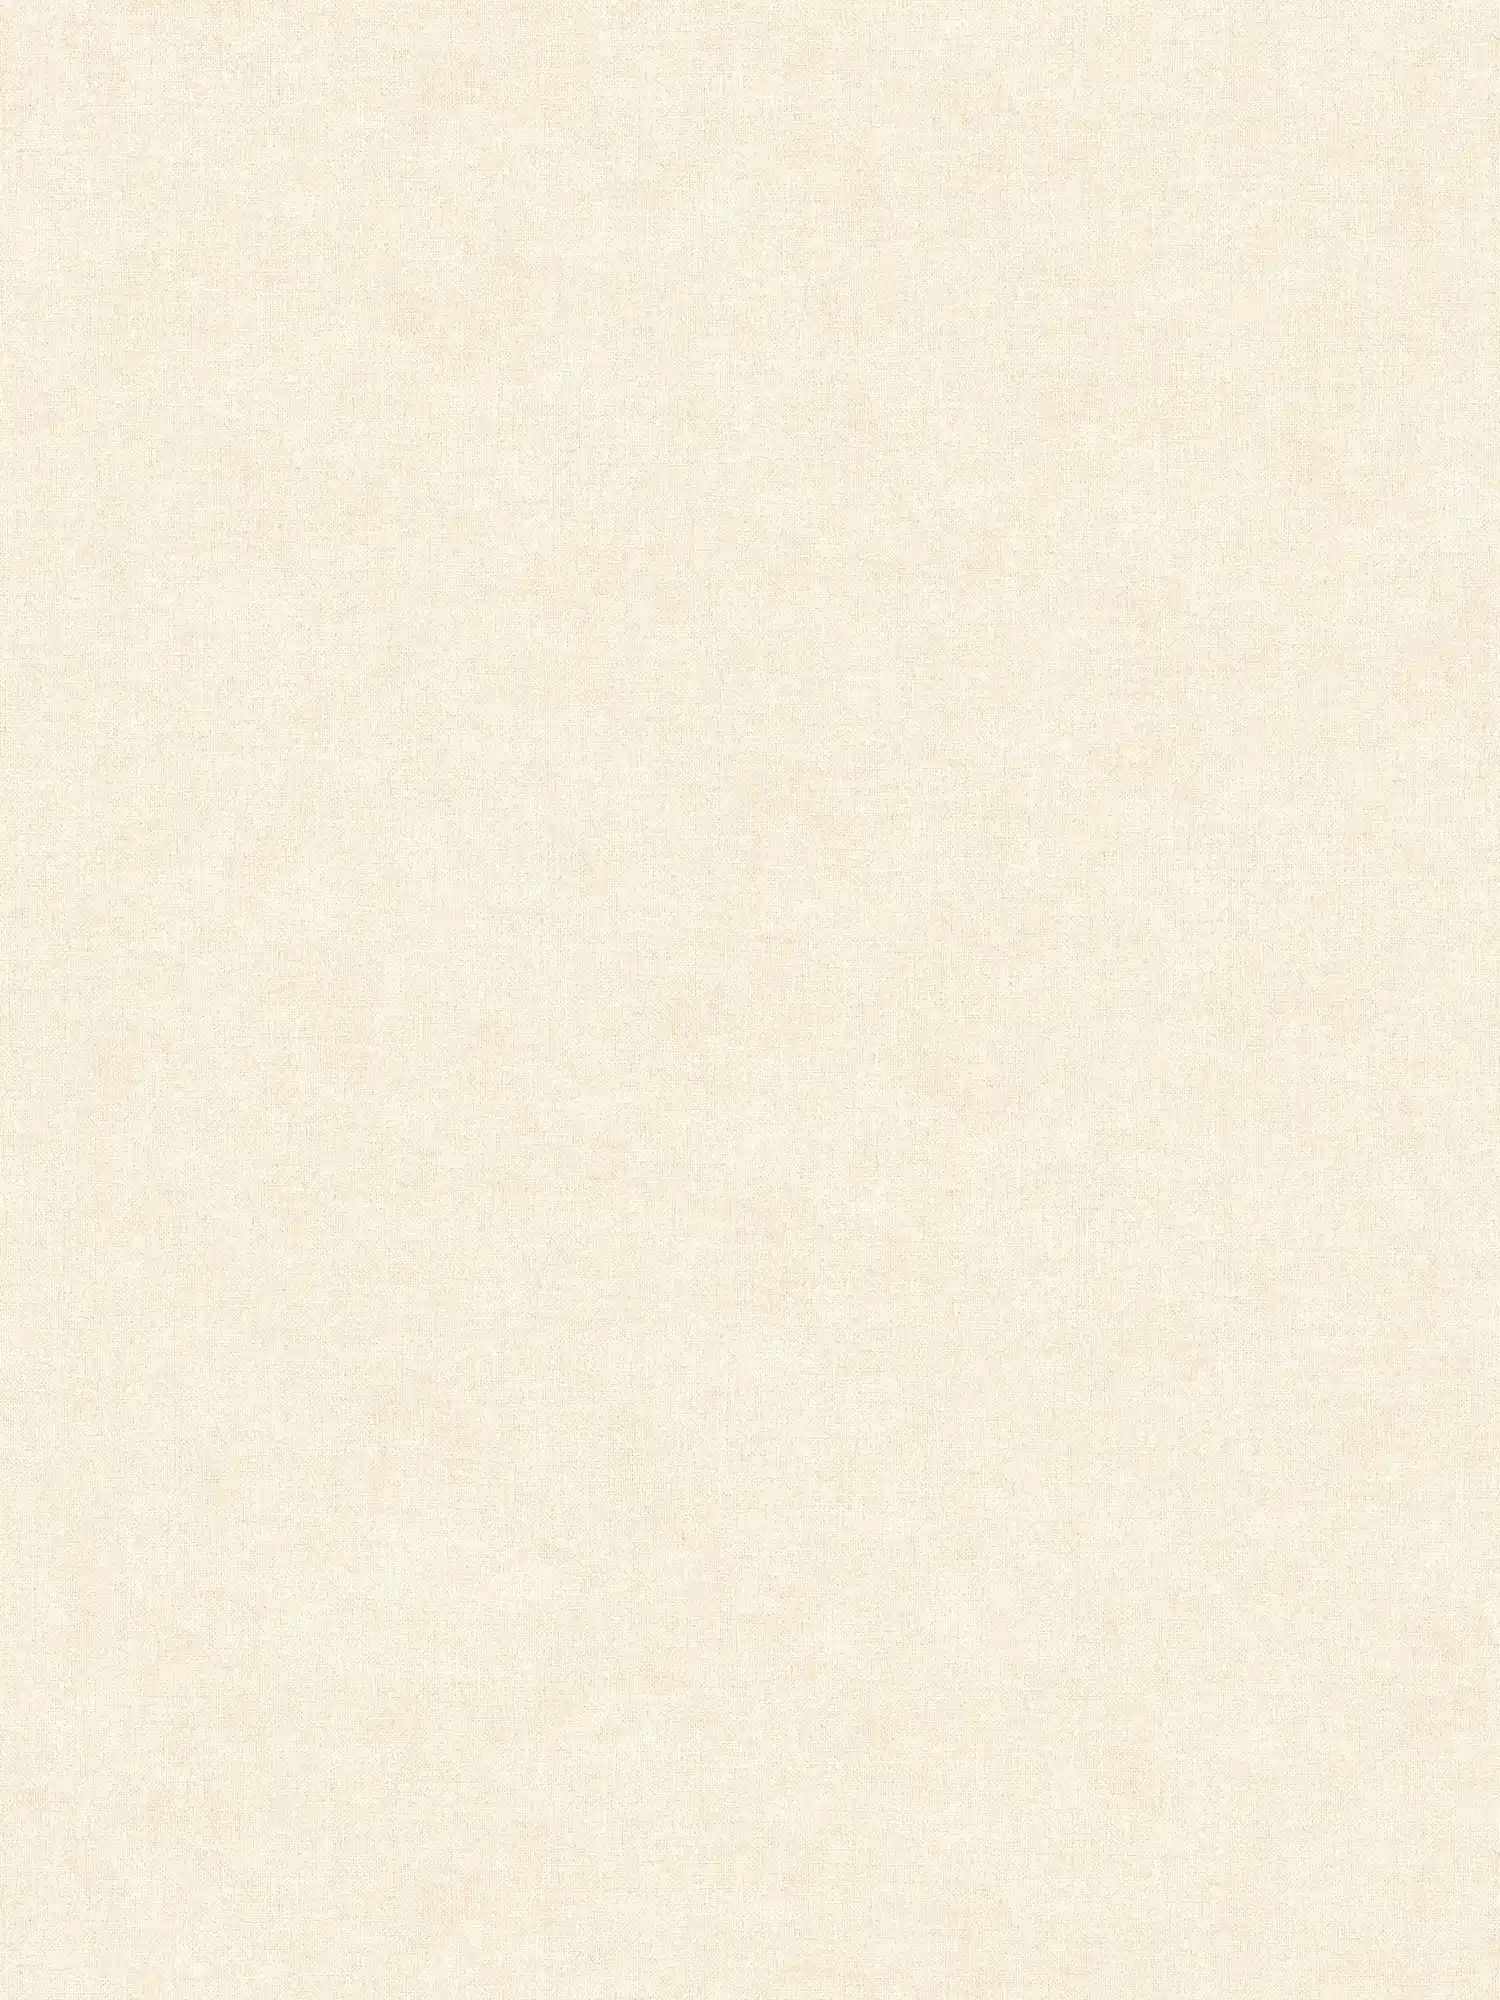 Papier peint crème-beige uni & mat, avec motifs structurés
